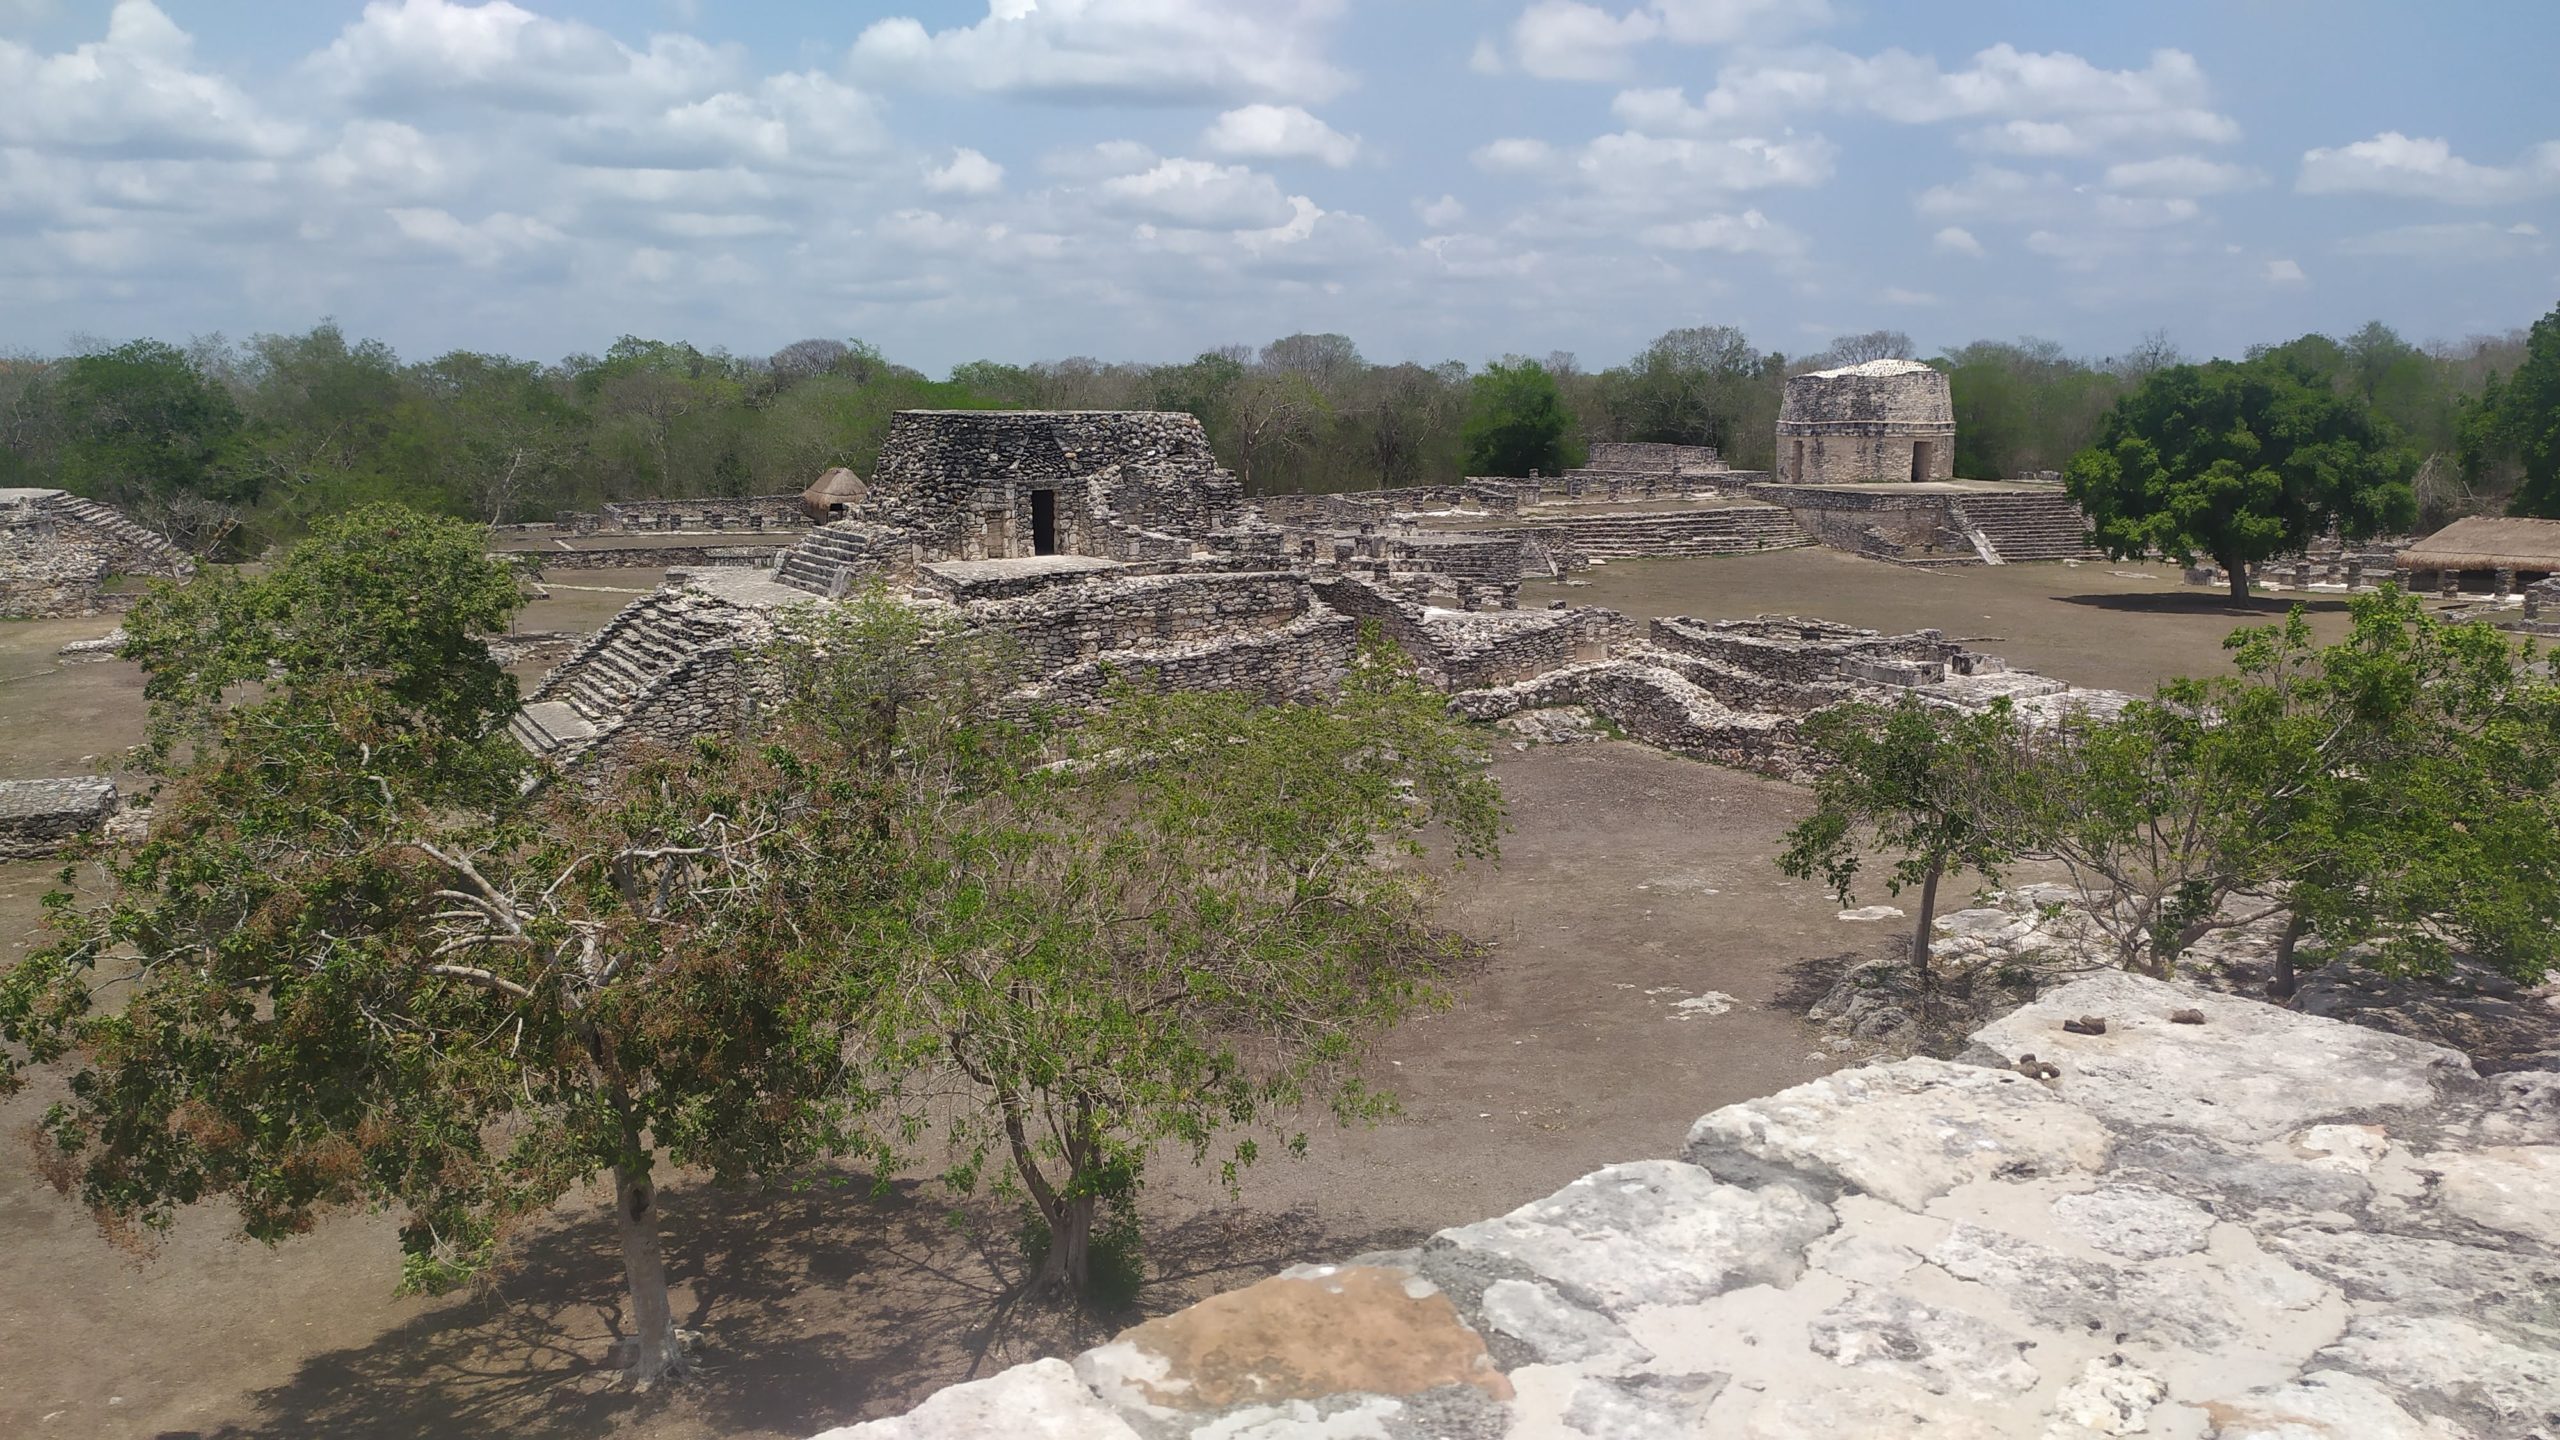 le site de Mayapan n'est pas très grand, mais de nombreus édifices bien préservés sont observables depuis le dessus d'une pyramide